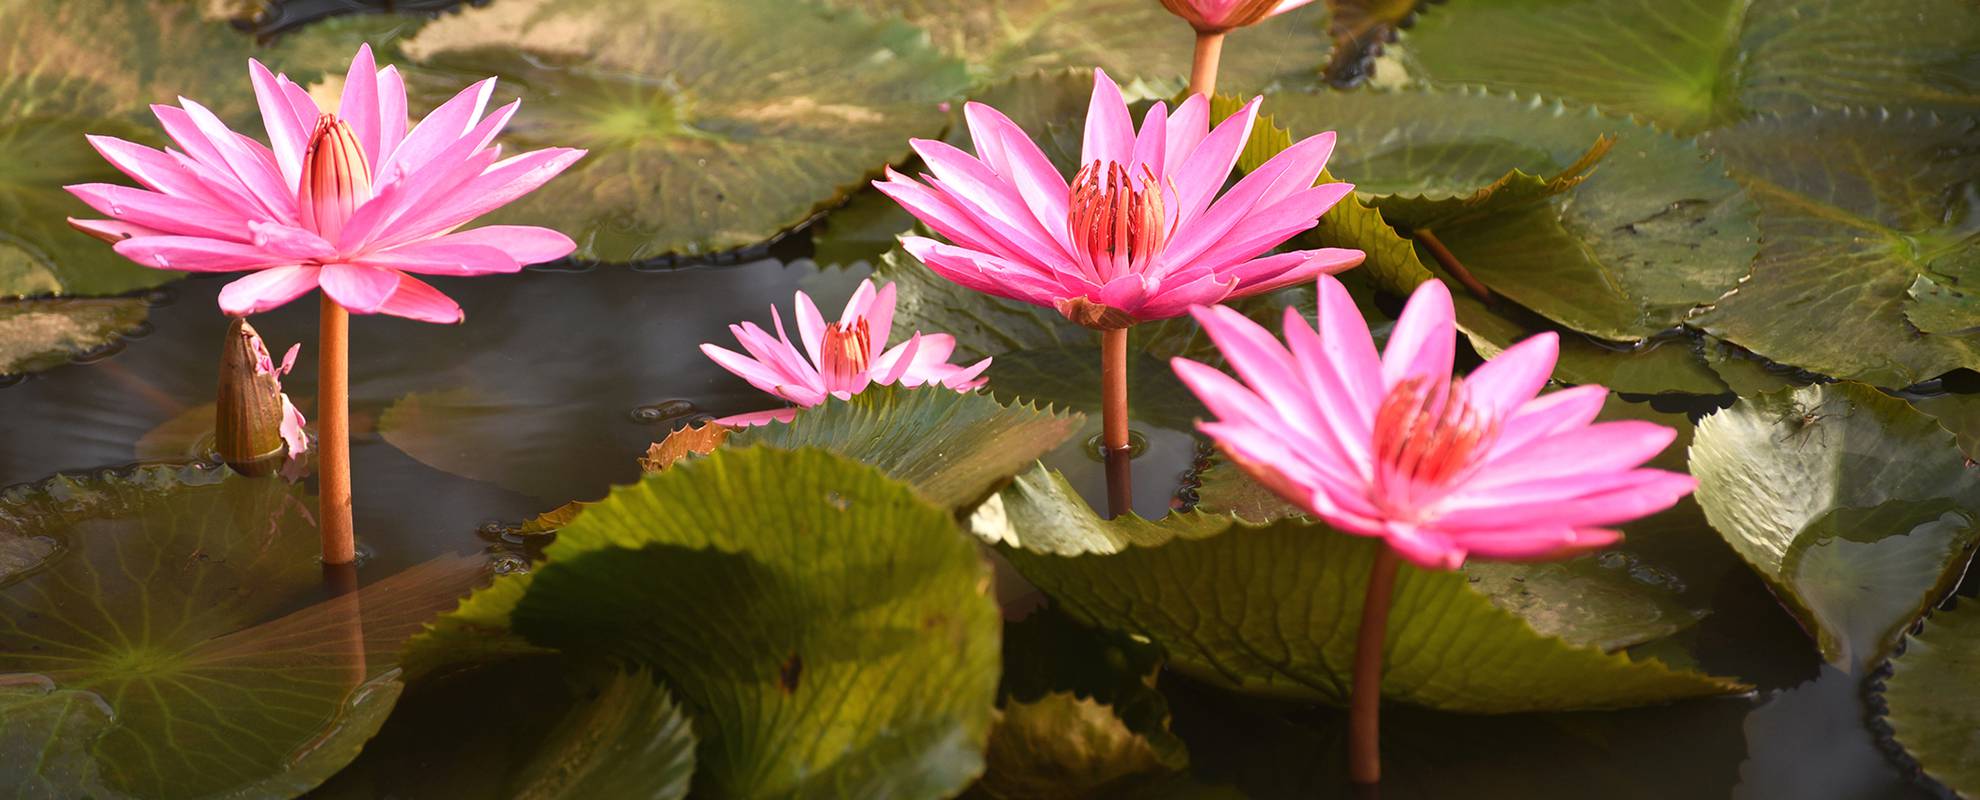 Lotusblomman är vanligt förekommande i Kerala